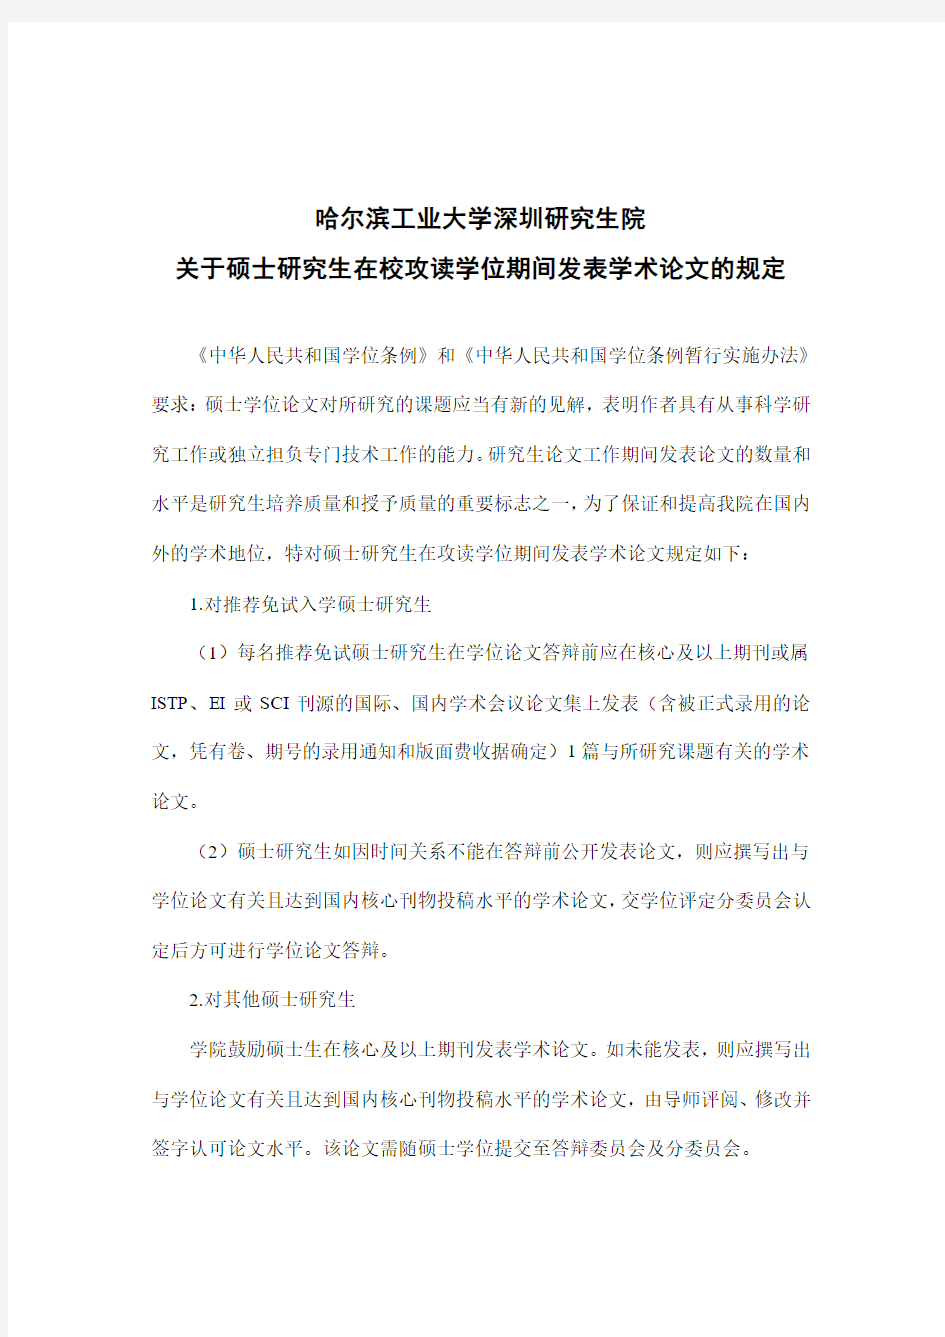 哈尔滨工业大学深圳研究生院关于硕士研究生在校攻读学位期间发表学术论文的规定